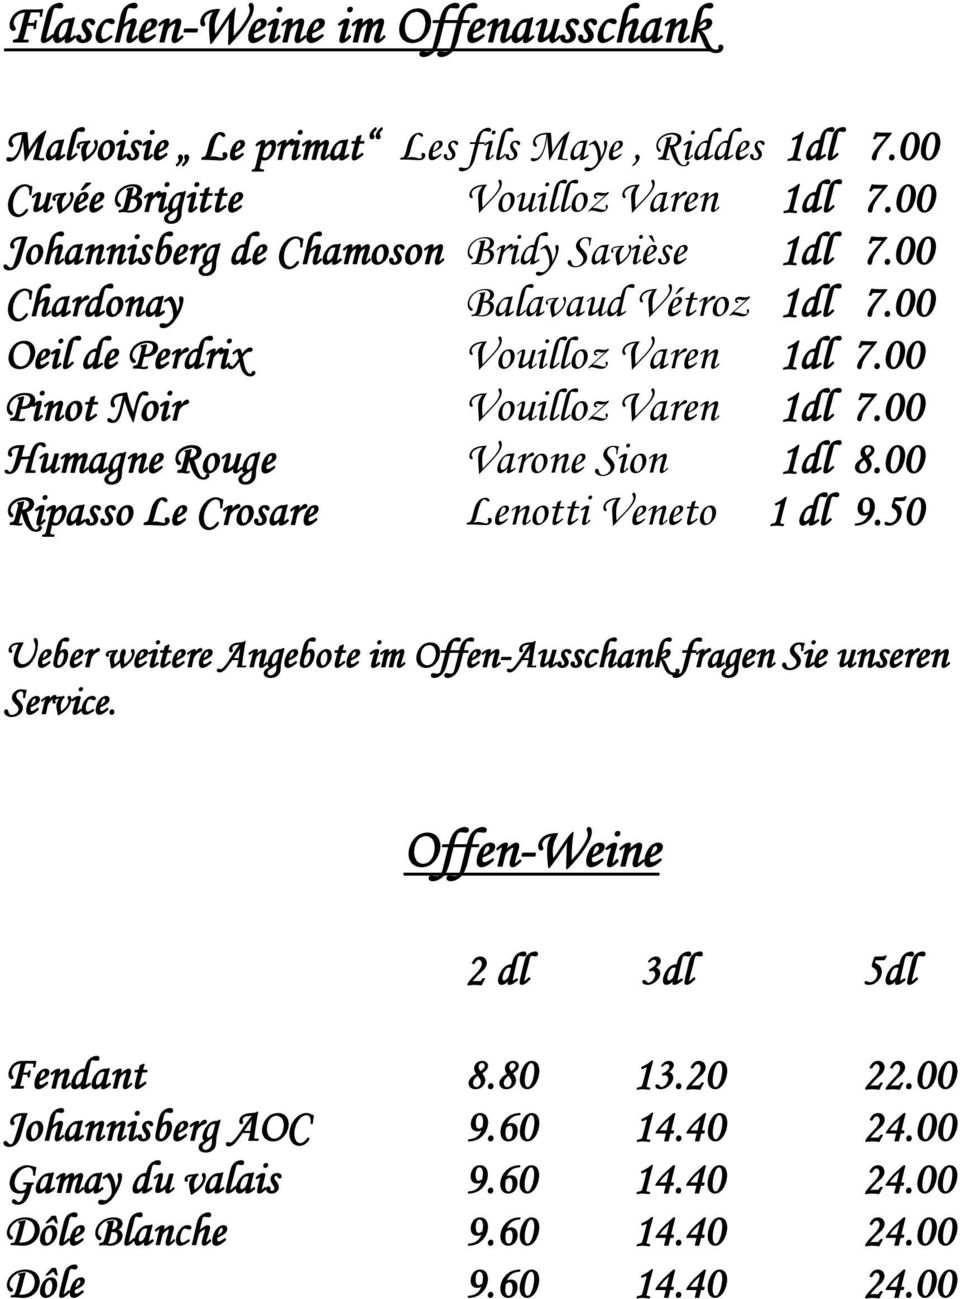 00 Pinot Noir Vouilloz Varen 1dl 7.00 Humagne Rouge Varone Sion 1dl 8.00 Ripasso Le Crosare Lenotti Veneto 1 dl 9.